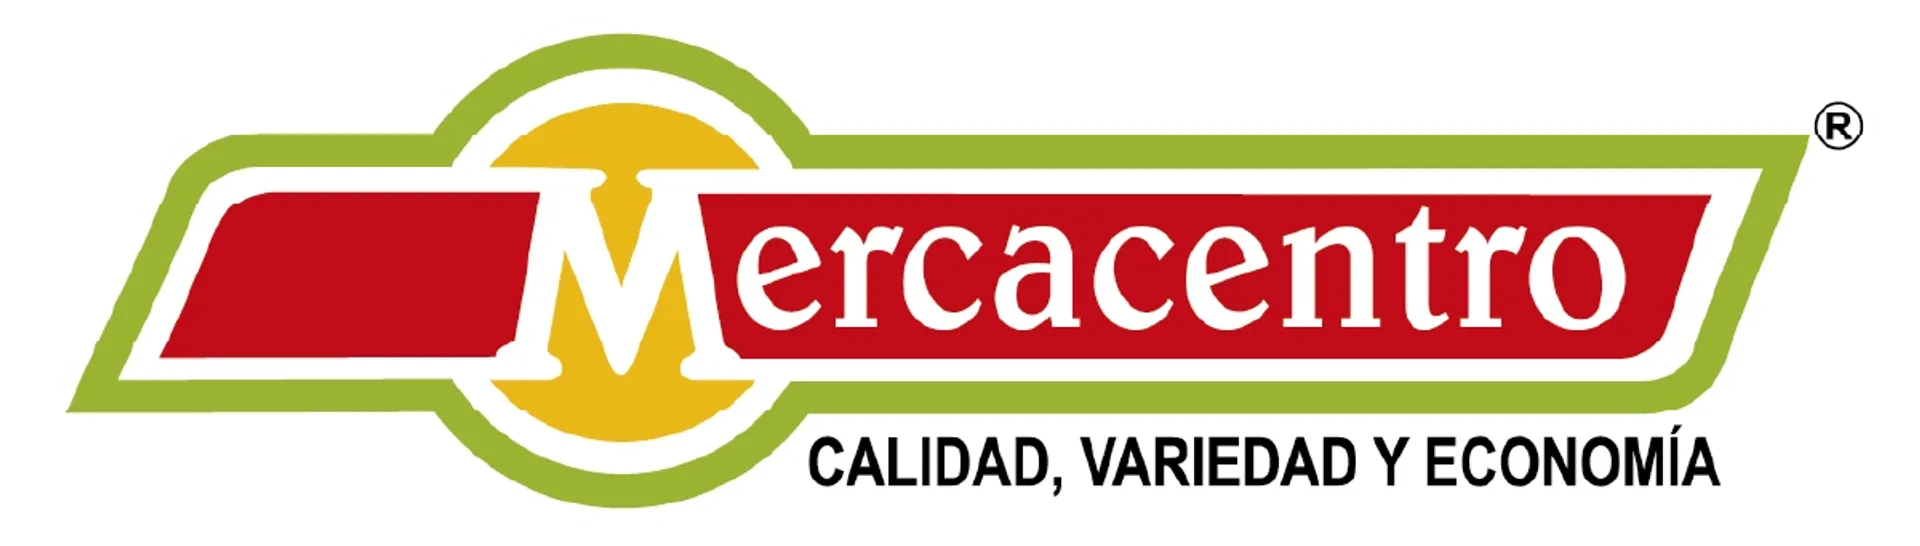 MERCACENTRO logo